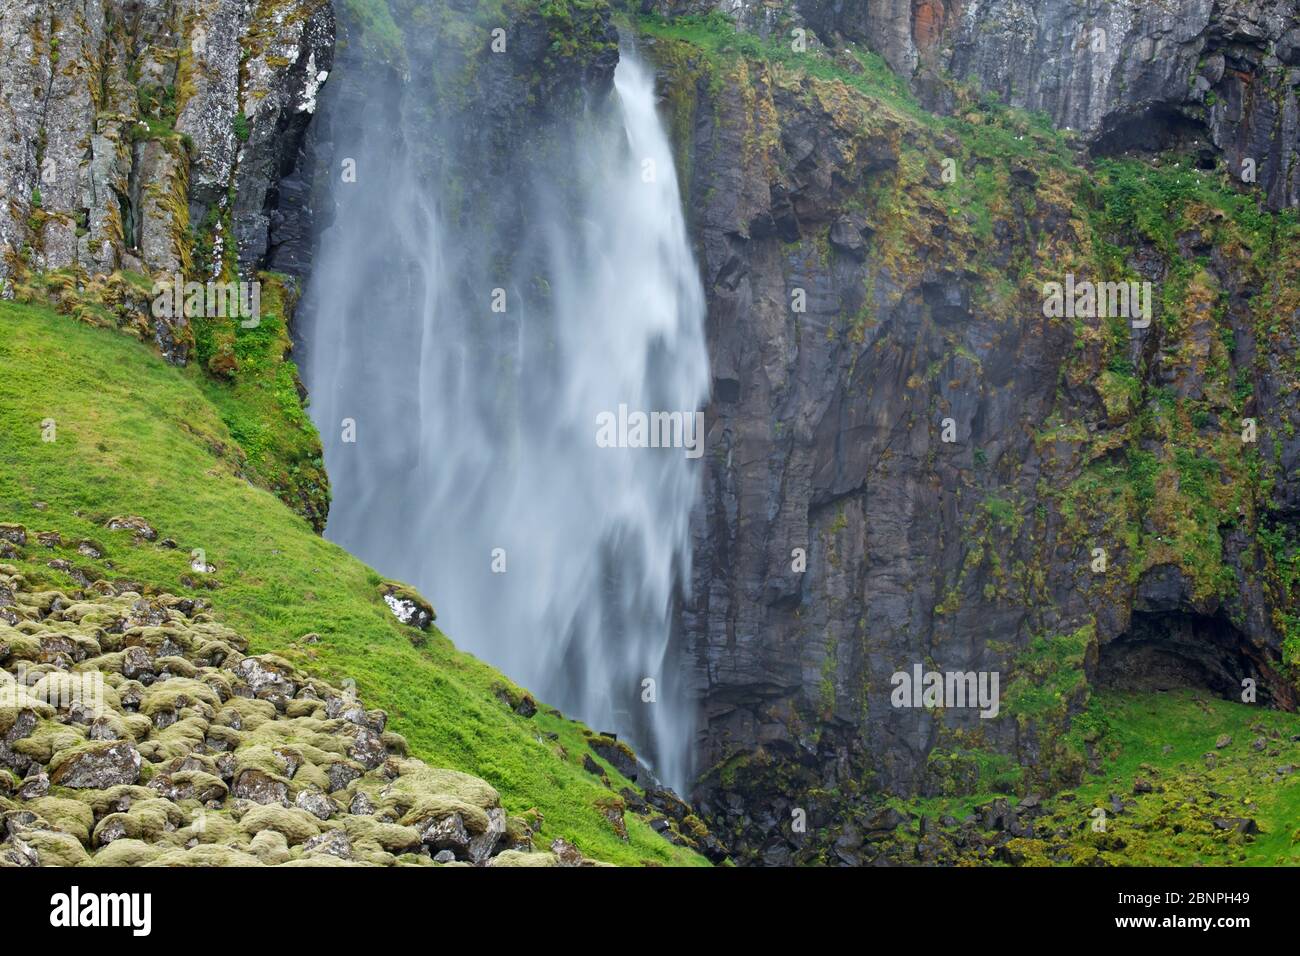 The Grundarfoss waterfall falls at Grundarfjoerdur 70m over a rock face. Stock Photo